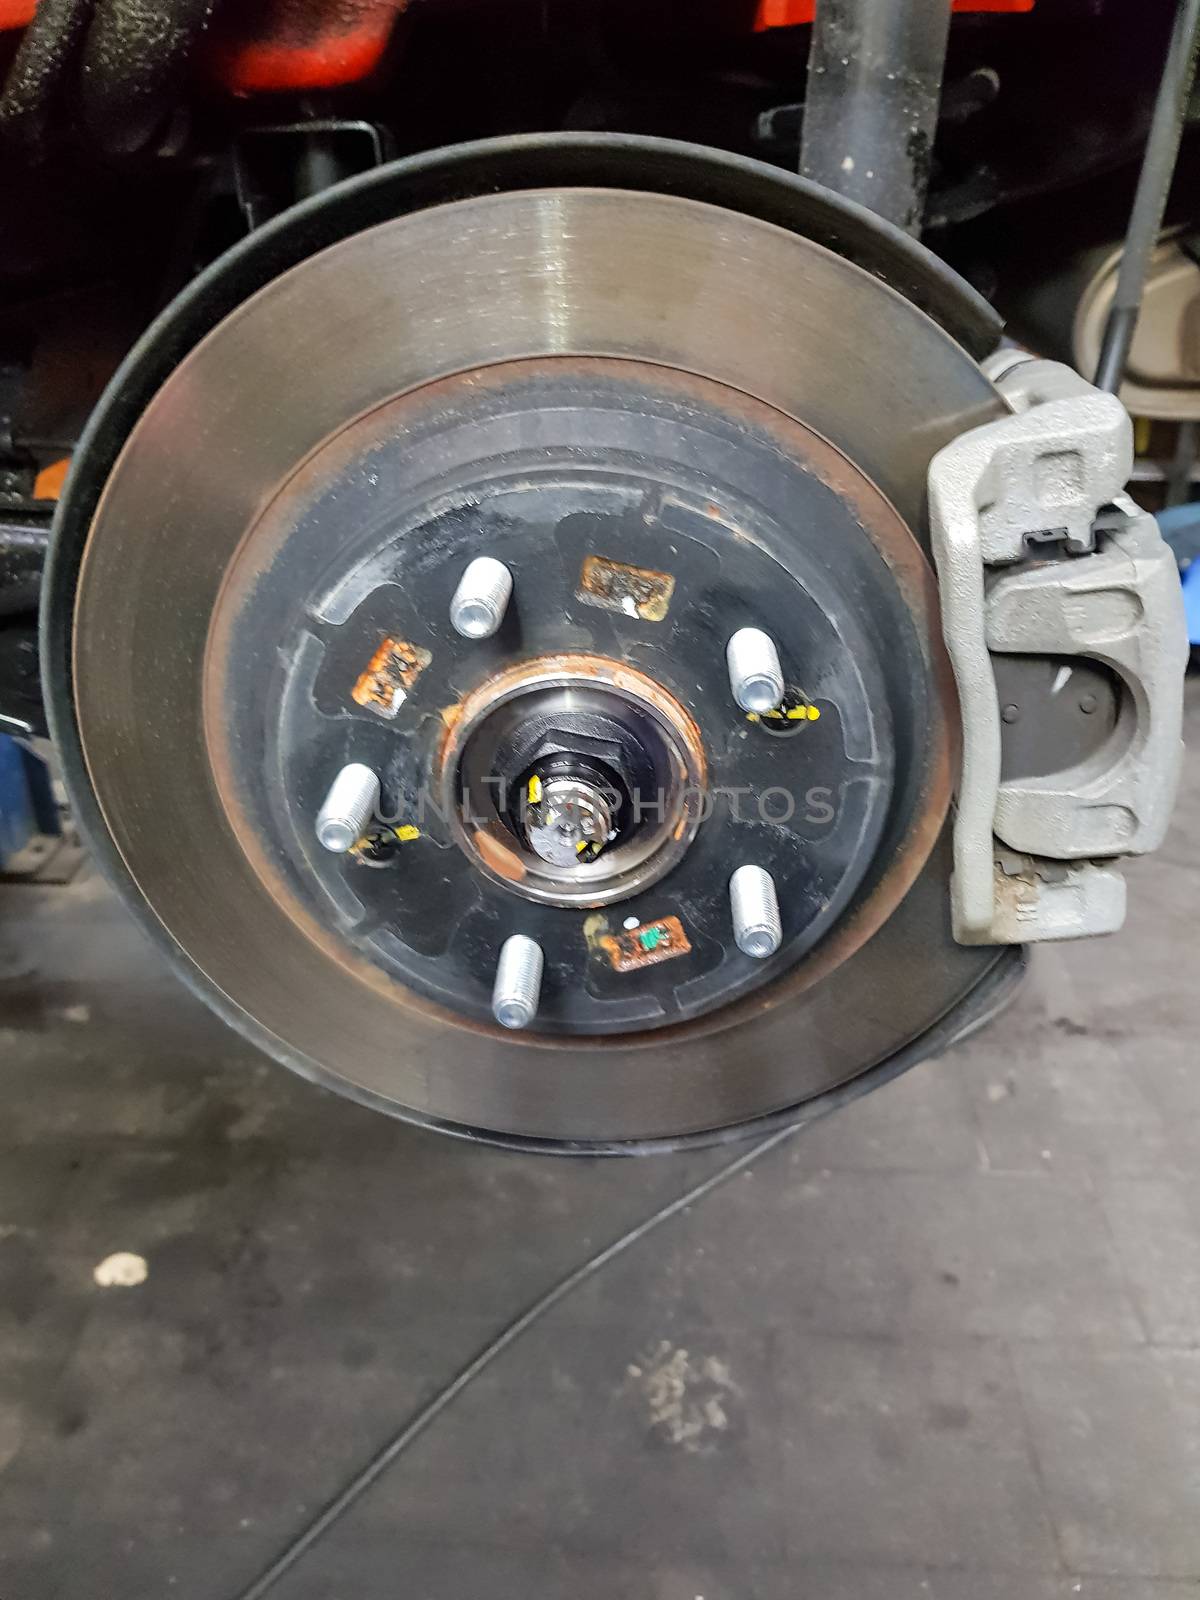 Car brake in the garage, car brake disc without tires
